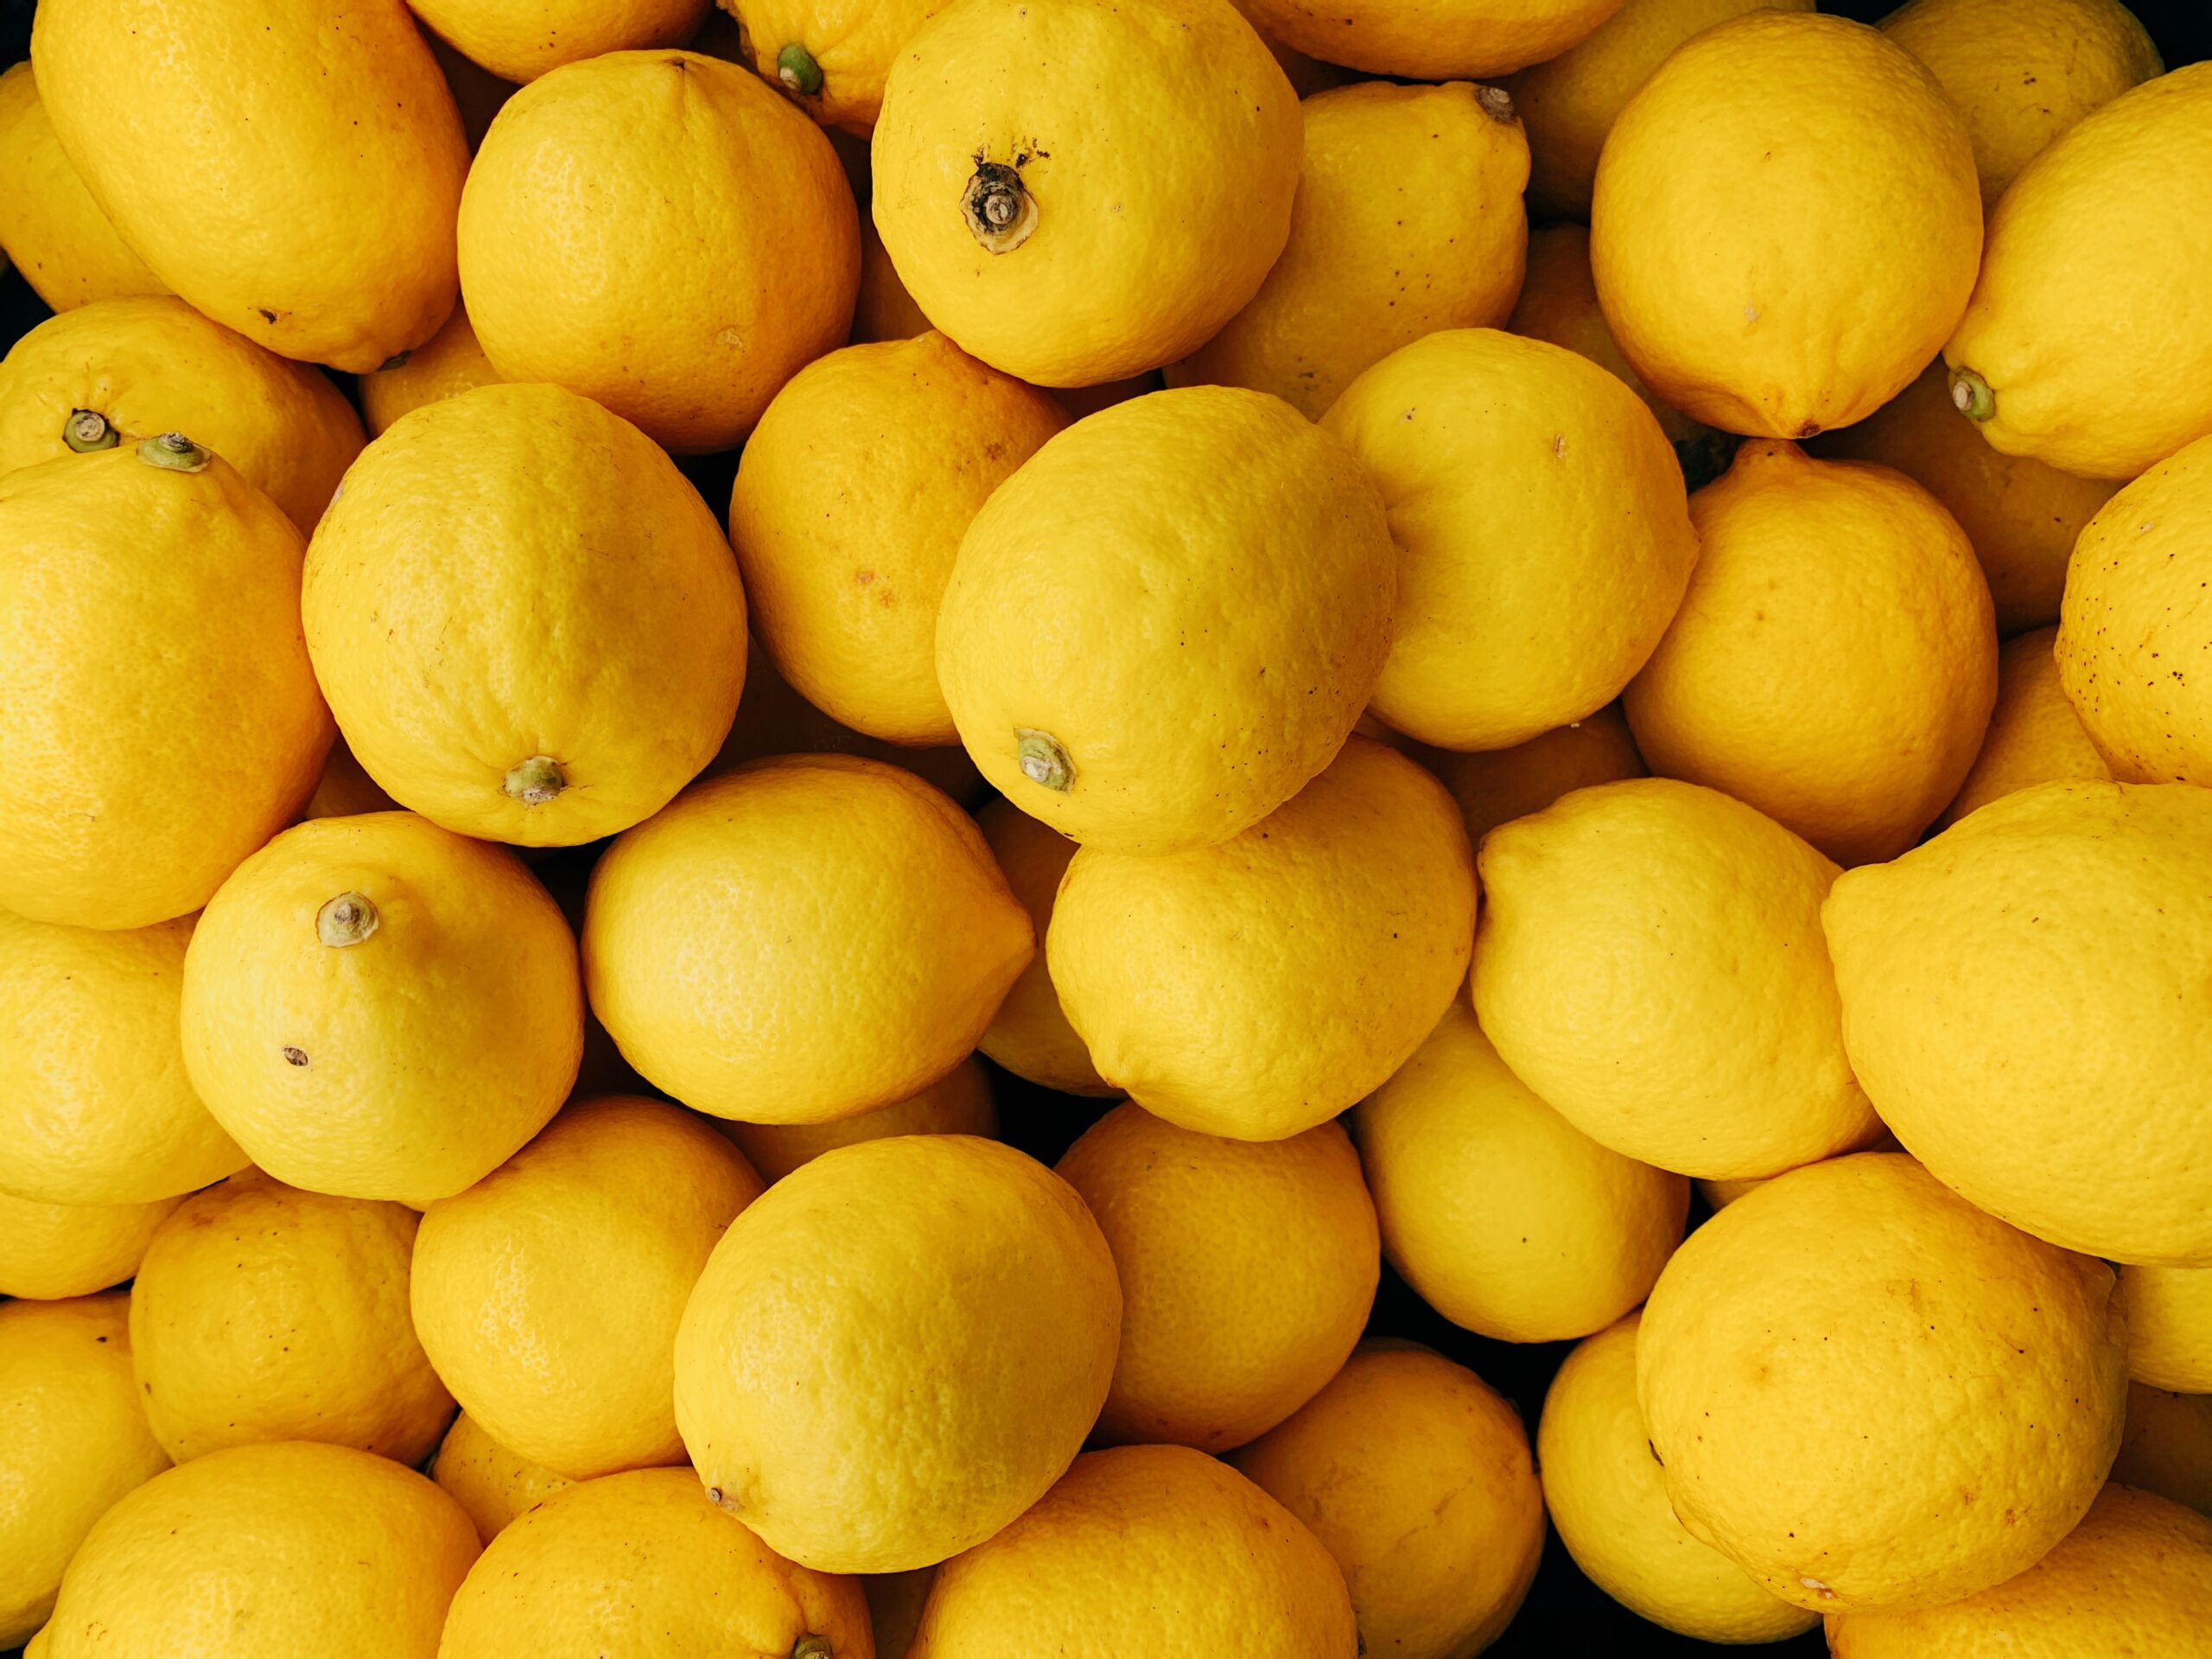 Especial #GadisSalud: el limón